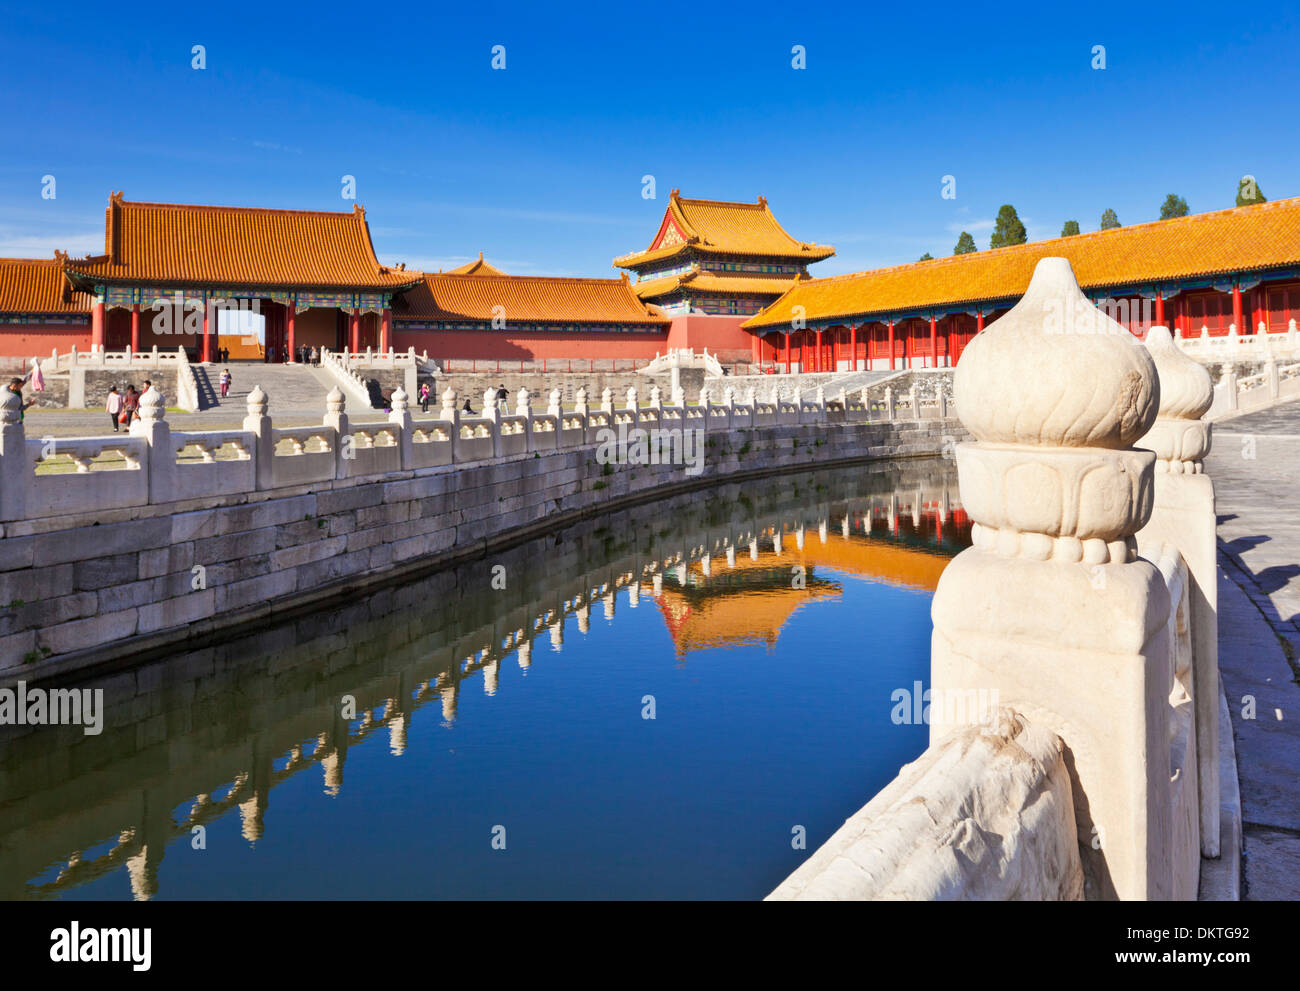 Golden interna del fiume di acqua che fluisce attraverso la corte esterna, Città Proibita complessa, Pechino, Repubblica Popolare Cinese, in Asia Foto Stock